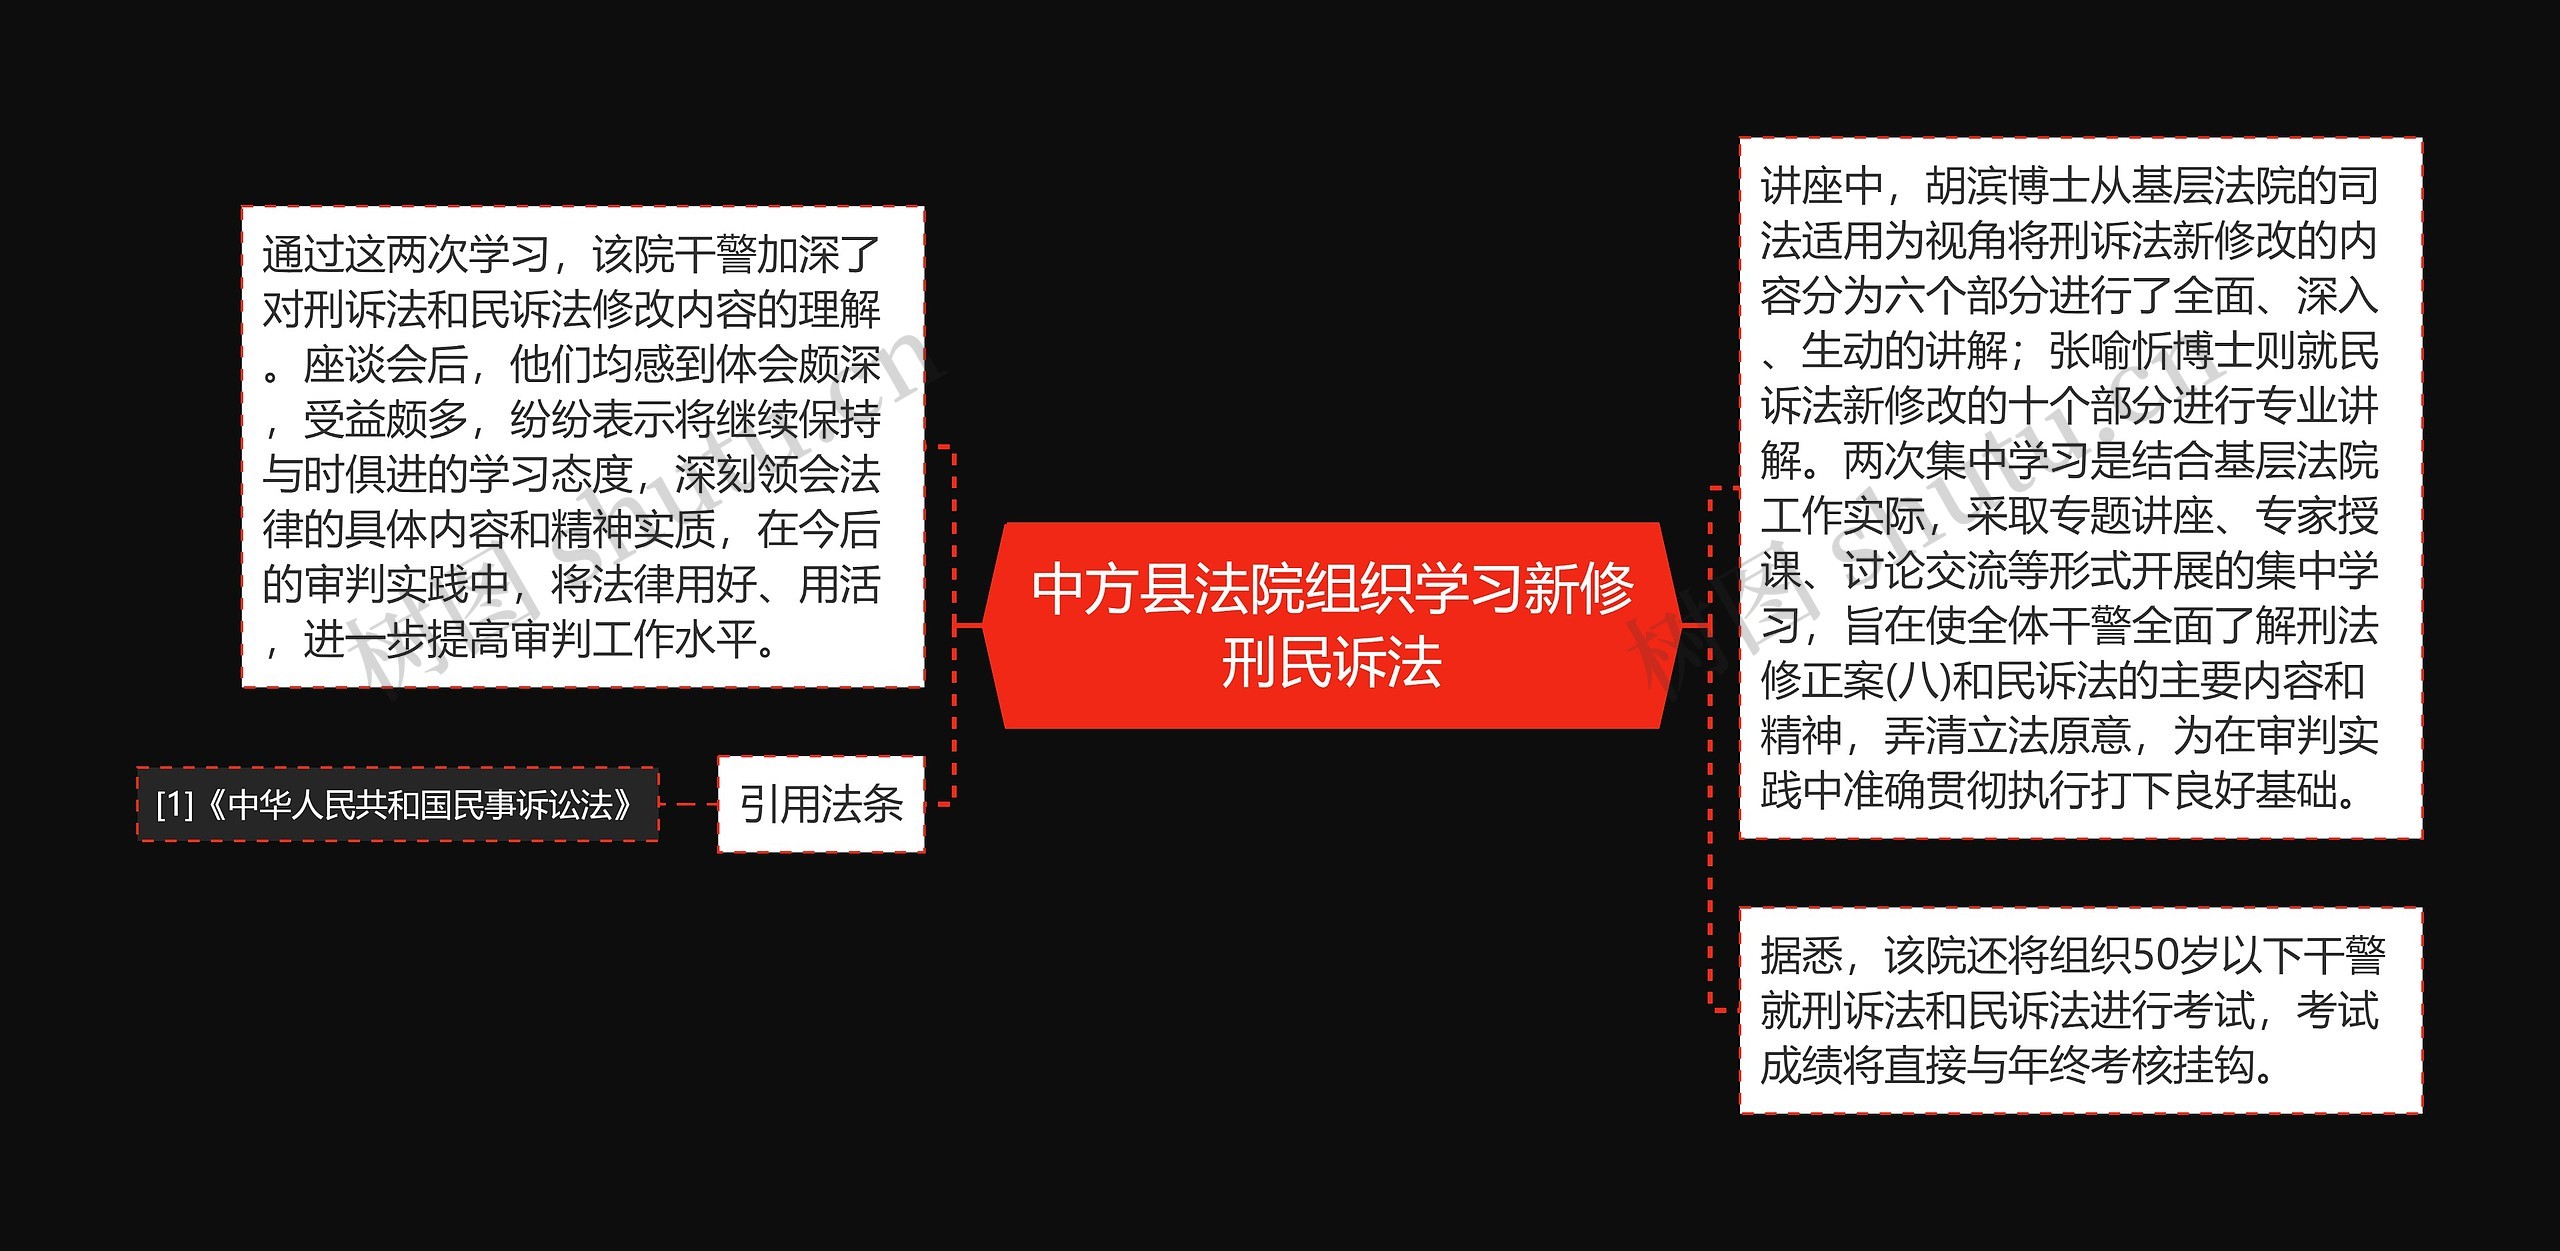 中方县法院组织学习新修刑民诉法